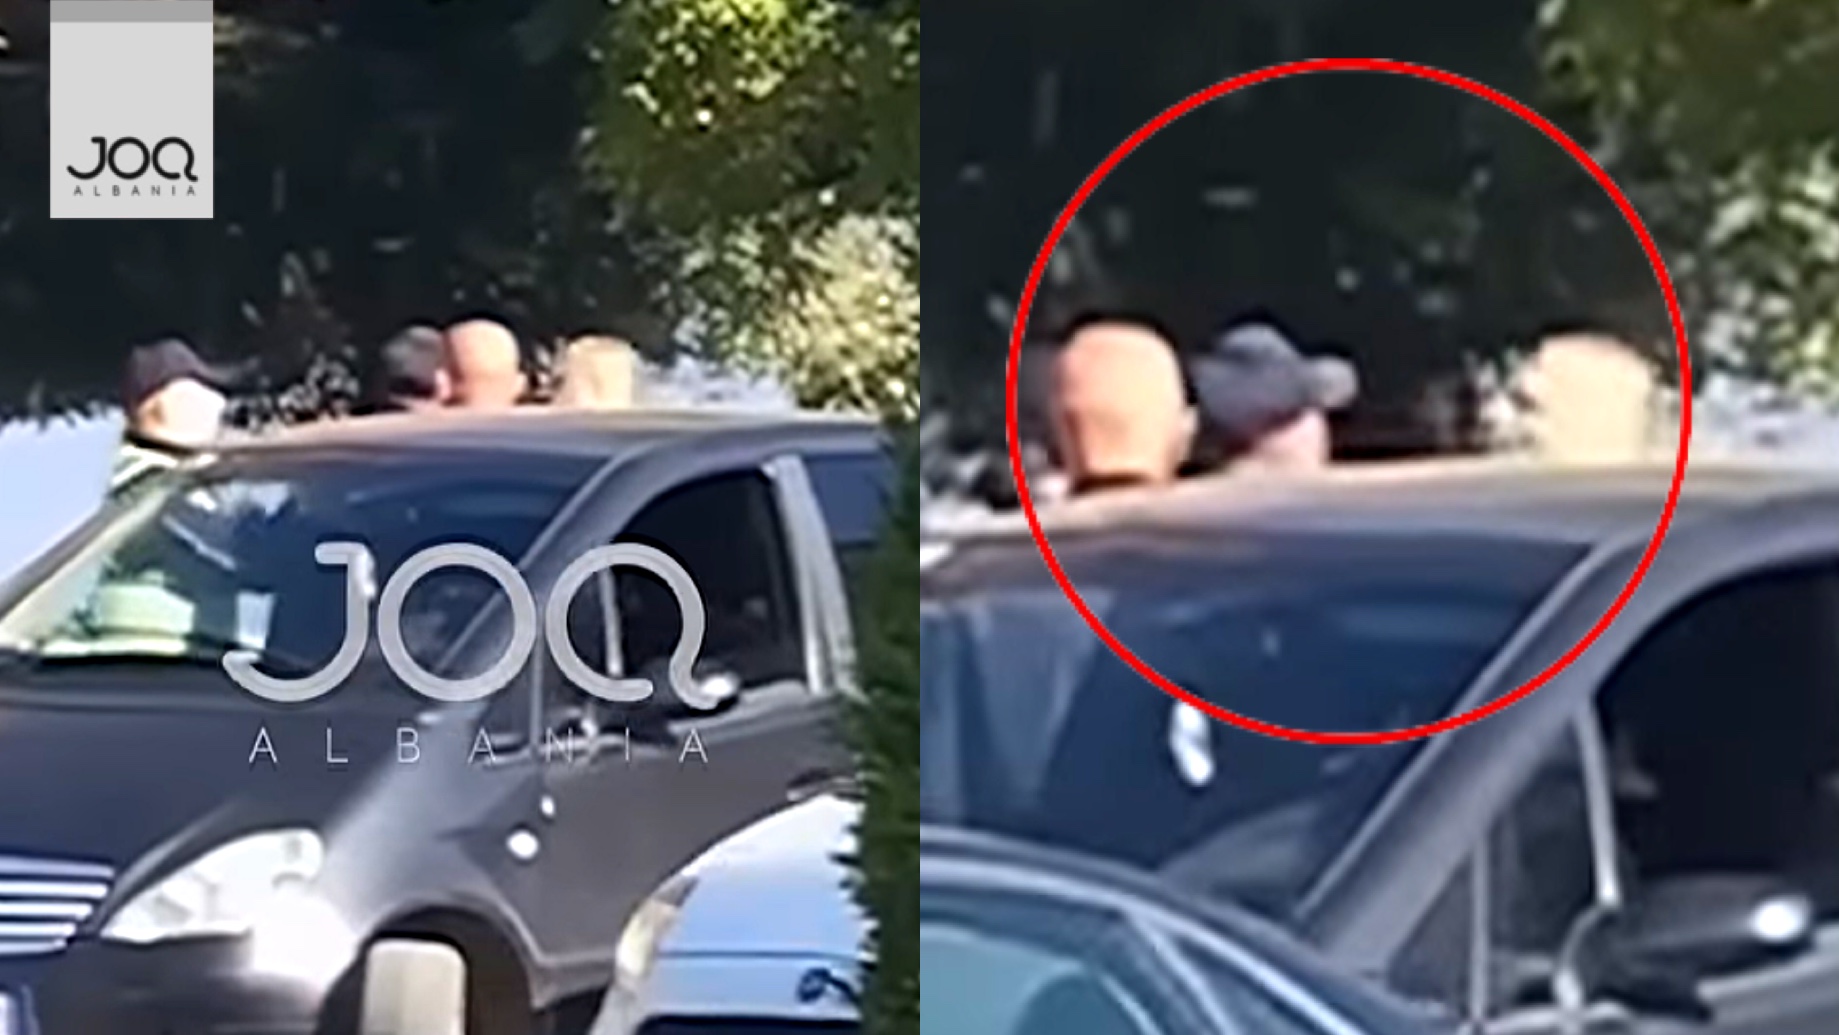 JOQ publikoi videon ku polici grushton qytetarin, kolegu e shihte/ Njëri përjashtohet, tjetri transferohet